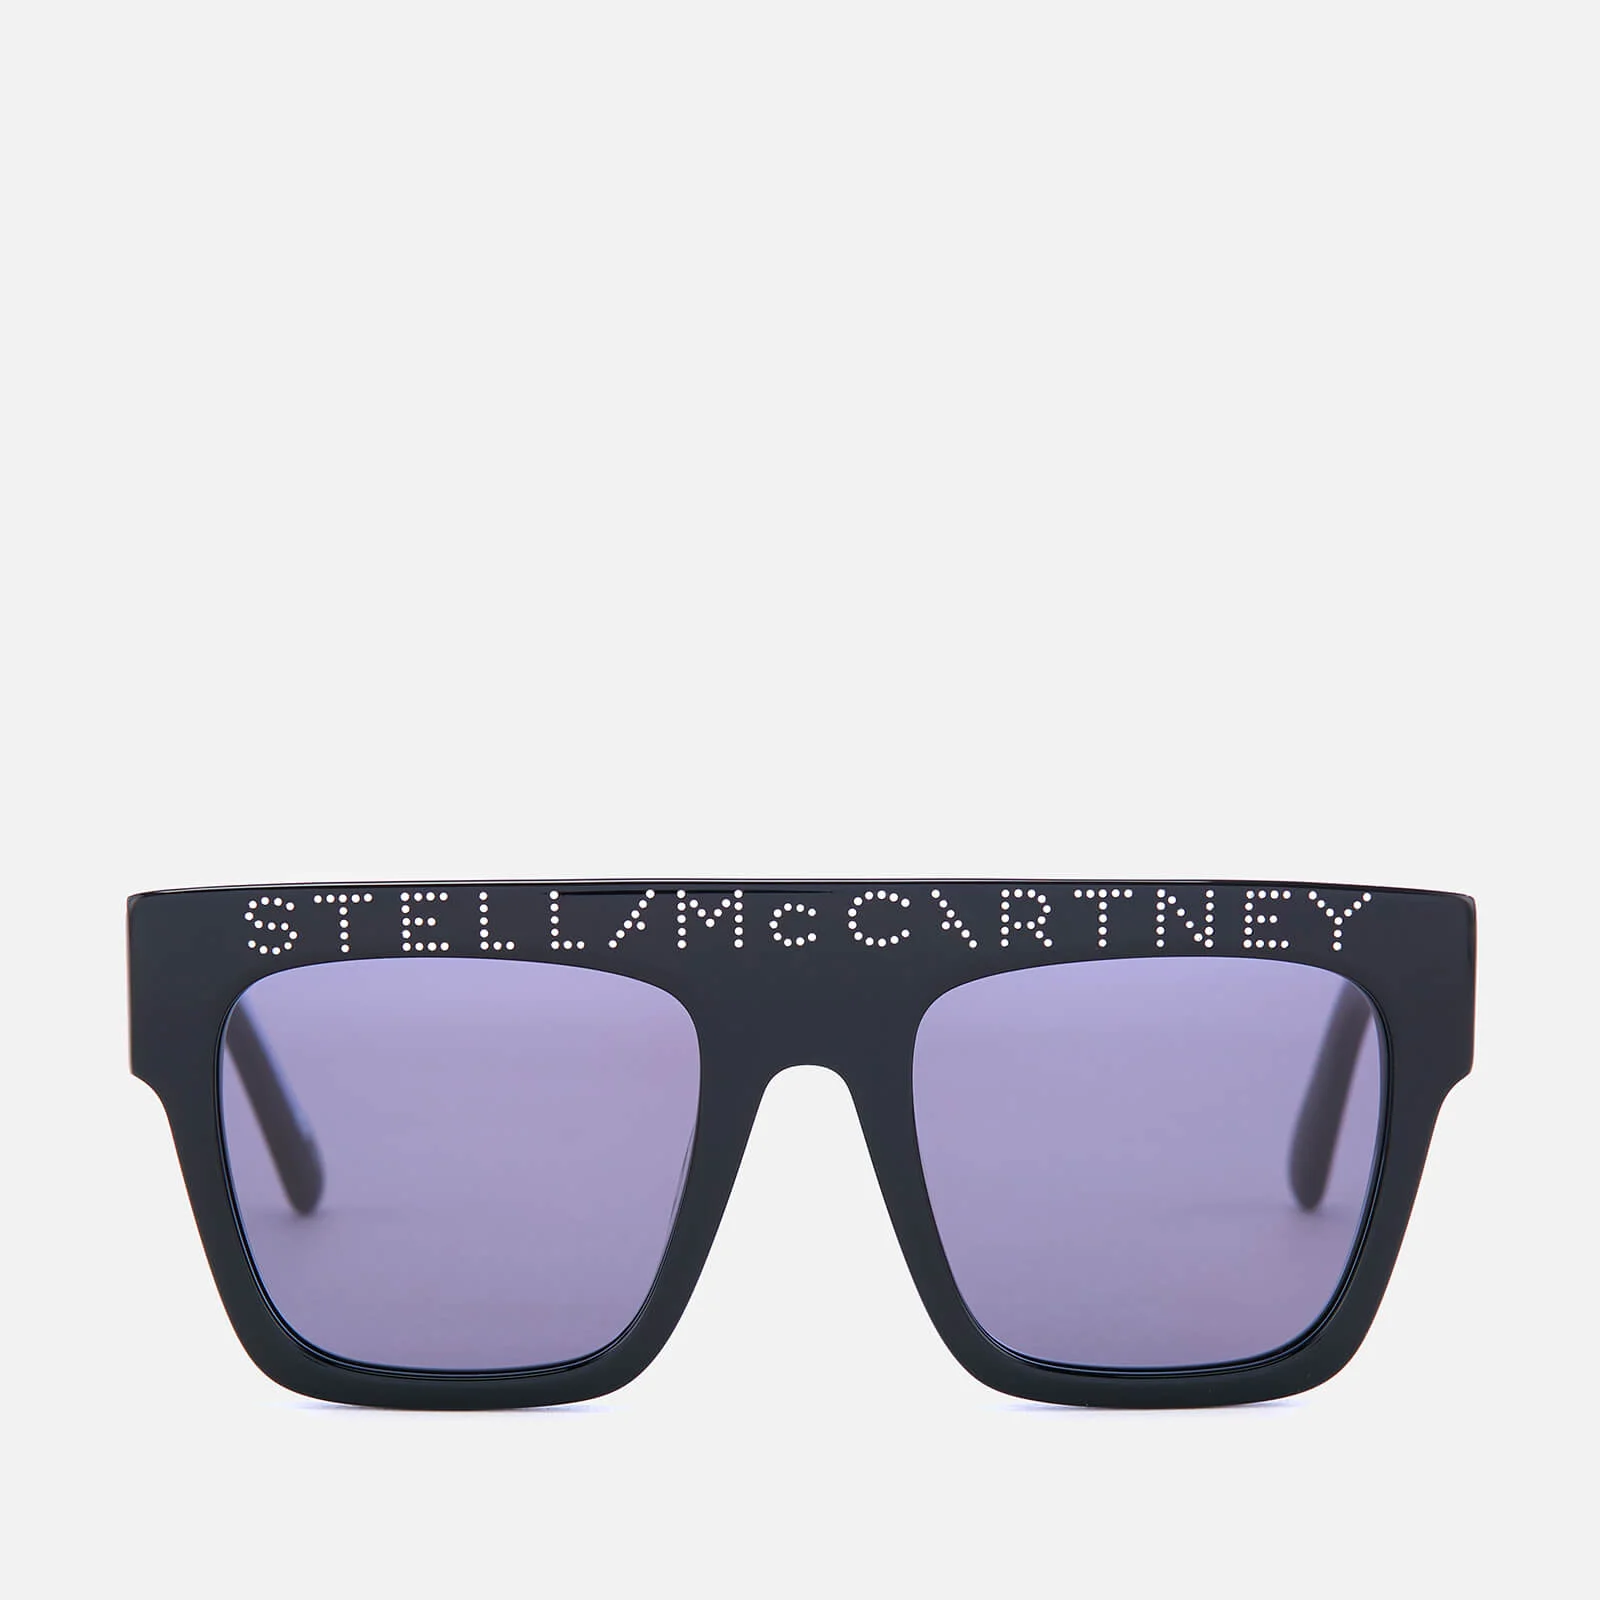 Stella McCartney Women's Visor Frame Sunglasses - Black Image 1